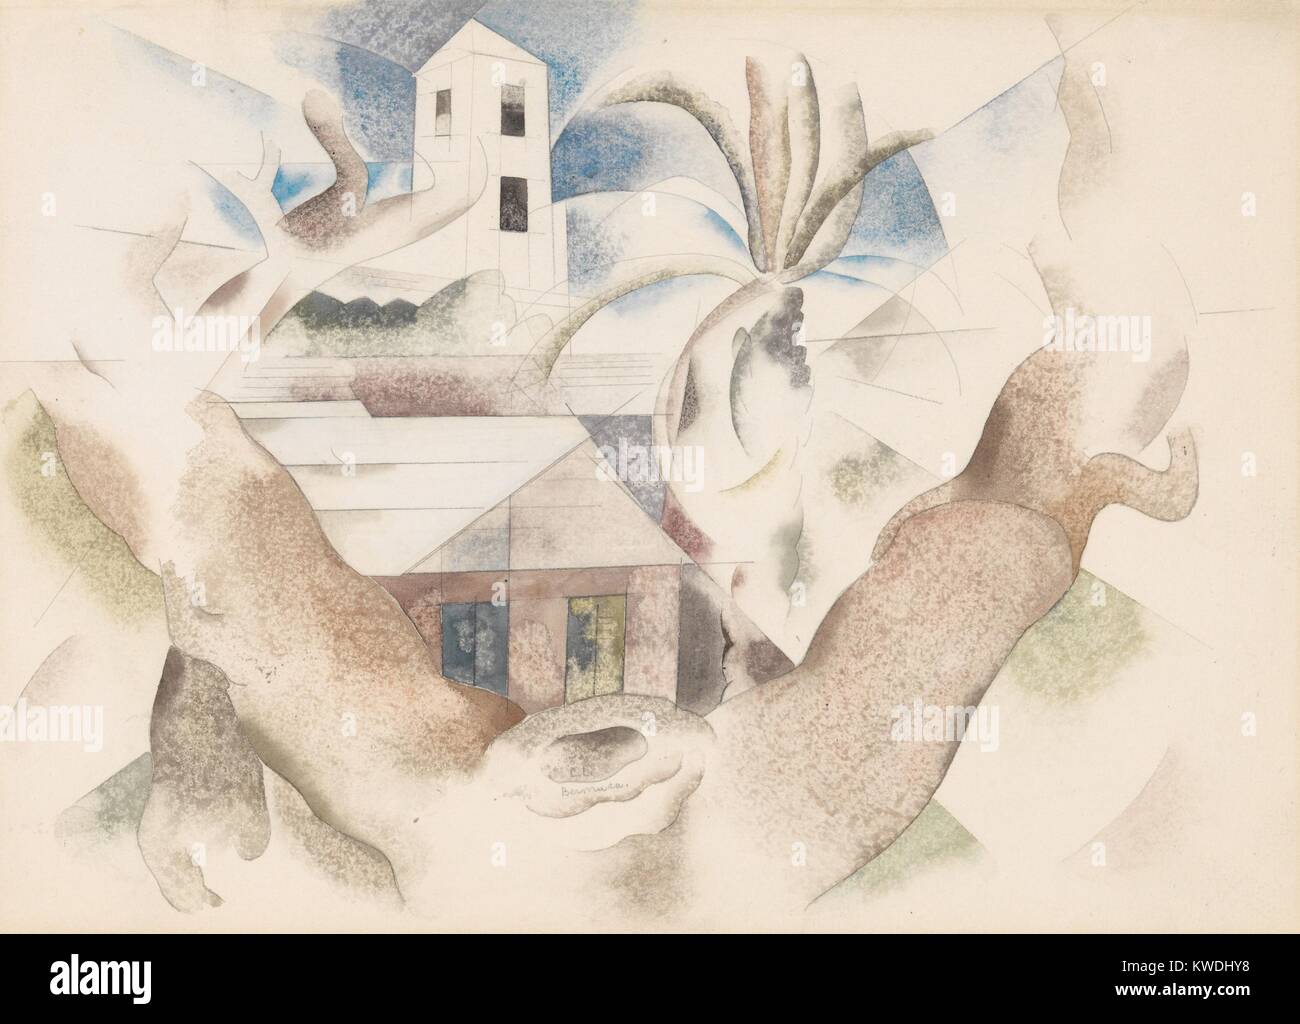 BERMUDA Nr. 1, Baum und Haus, von Charles Demuth, 1917, American Aquarell Malerei mit Bleistift. Kubistisch beeinflussten Landschaft mit Bäumen und Häusern (BSLOC 2017 7 92) Stockfoto